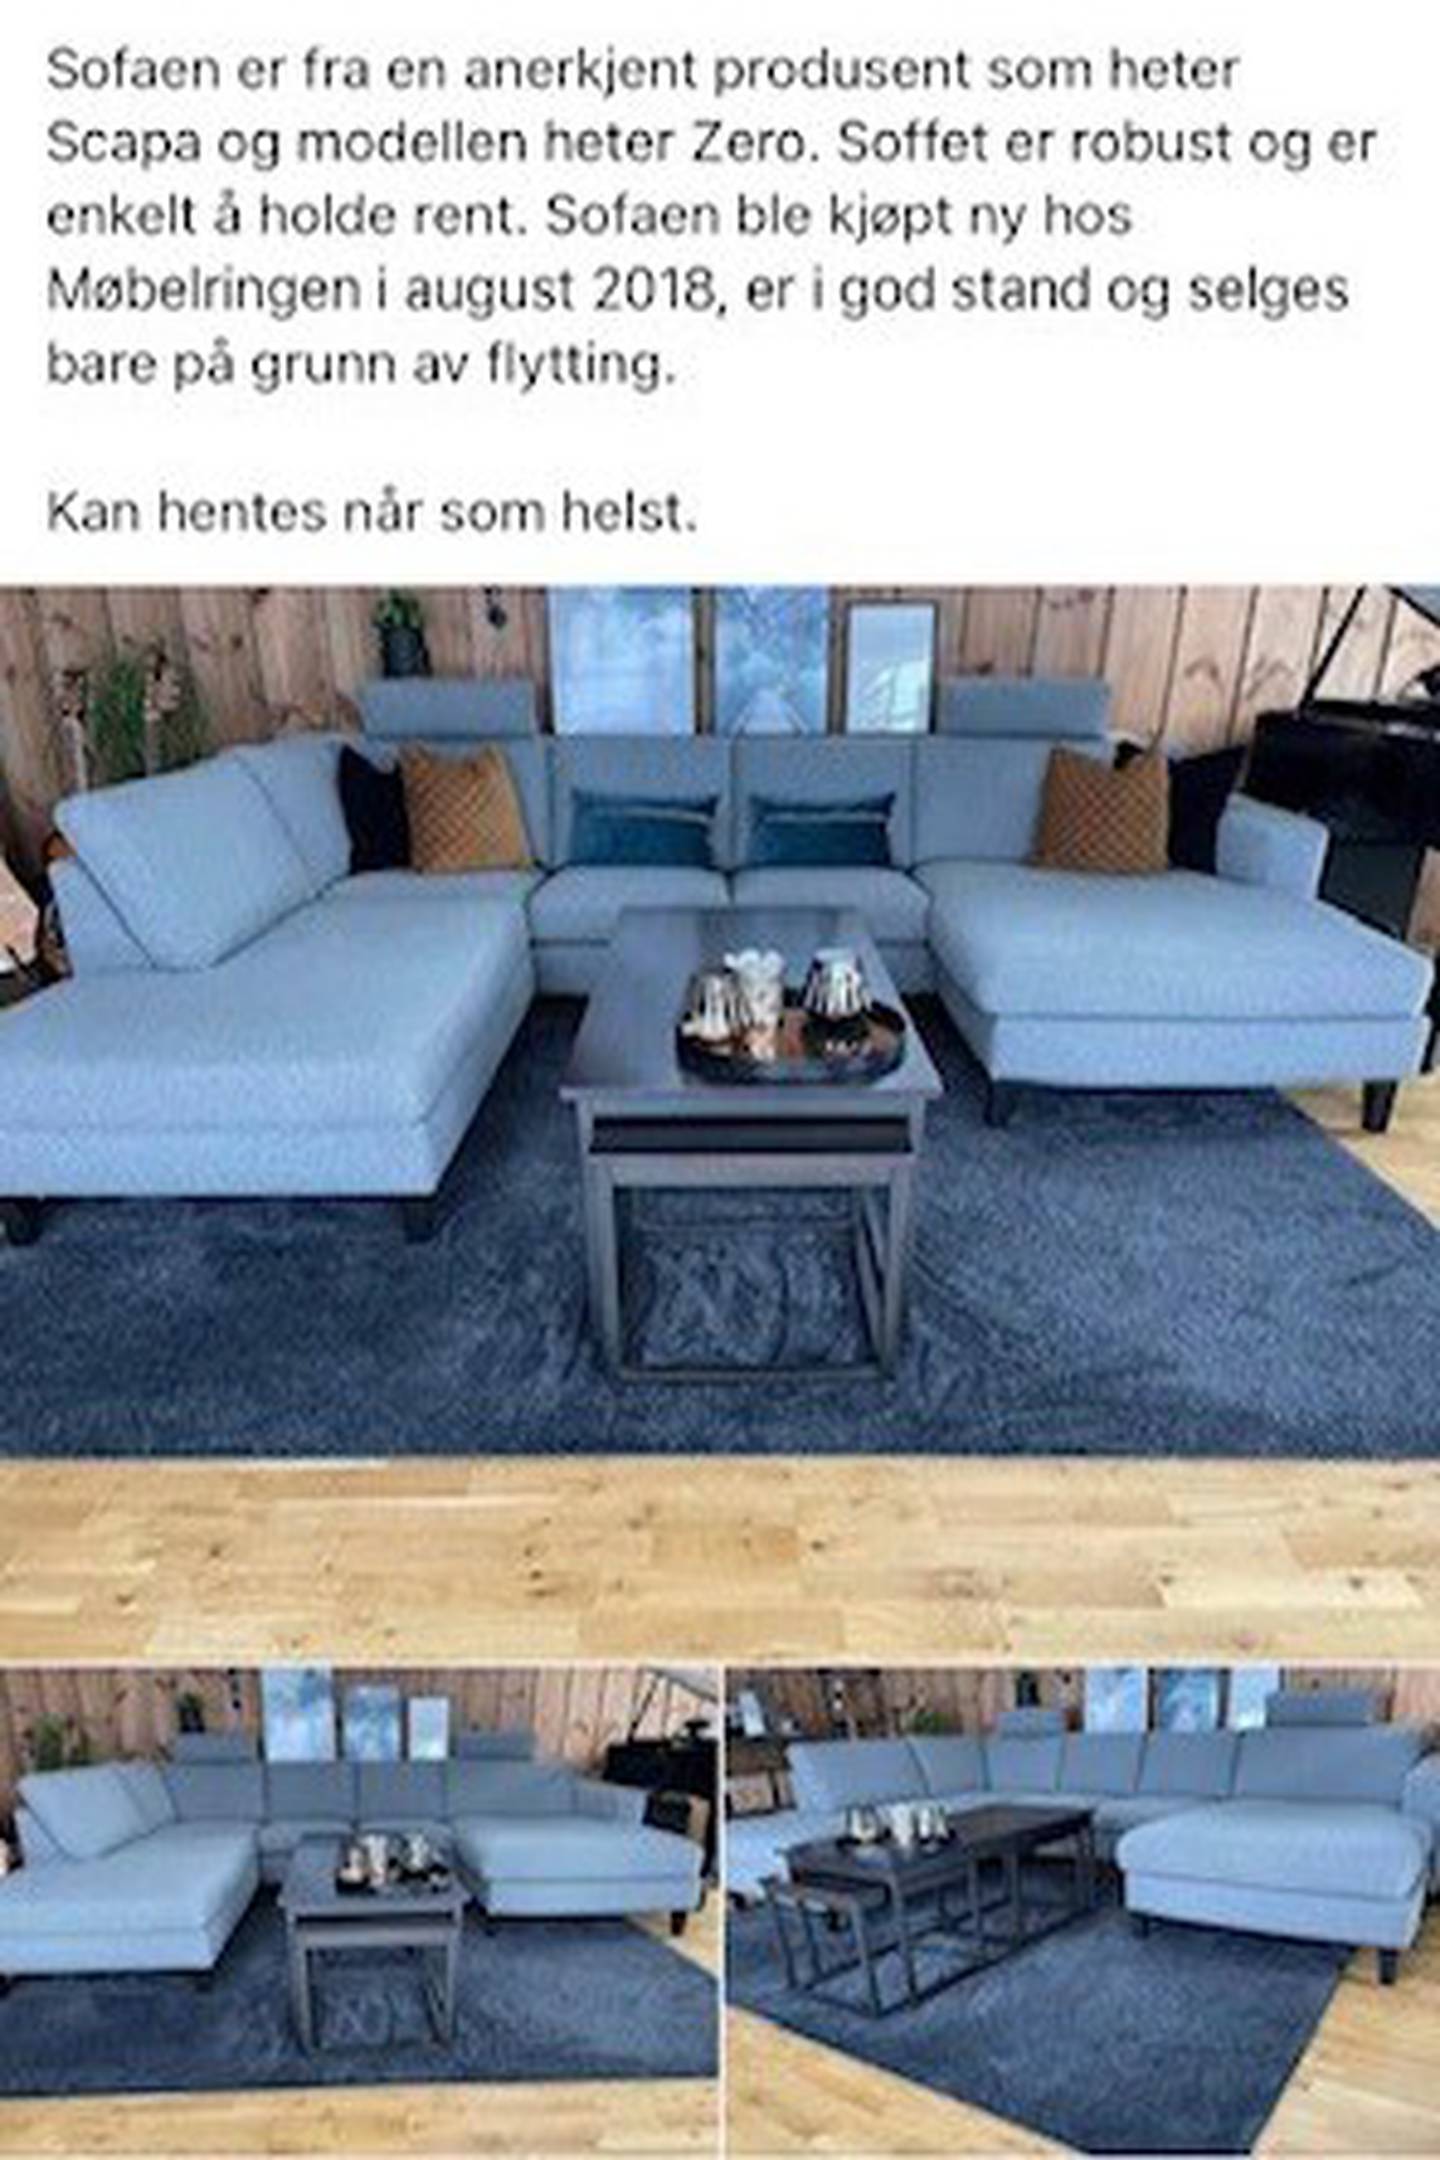 Jeanette Røkkum kjøpte sofa via Facebook. Sofaen hun fikk manglet både puter og ben.